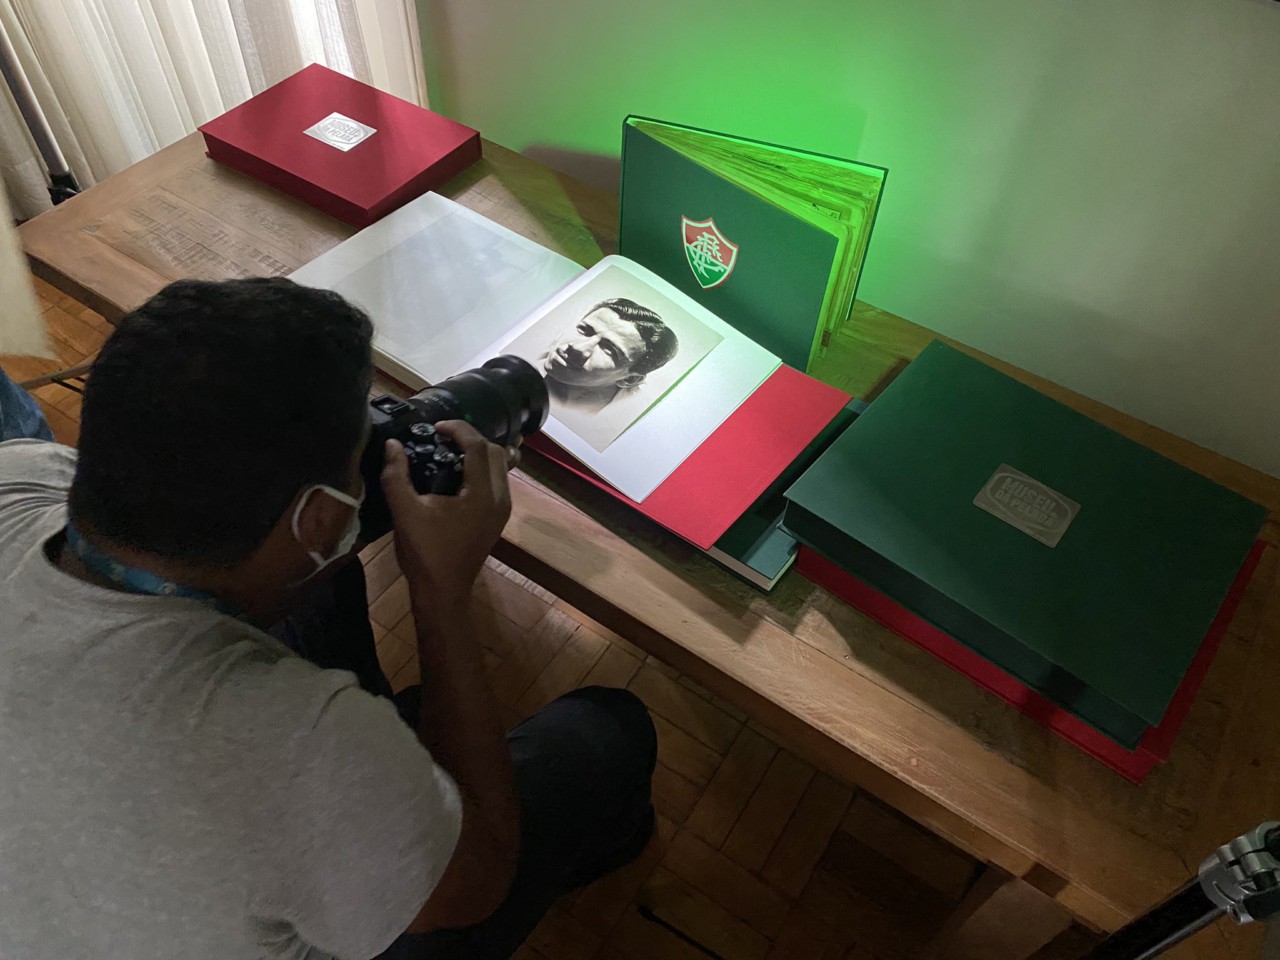 Fotos do acervo da família foram restauradas e serão doadas ao Fluminense - Edgard Maciel de Sá